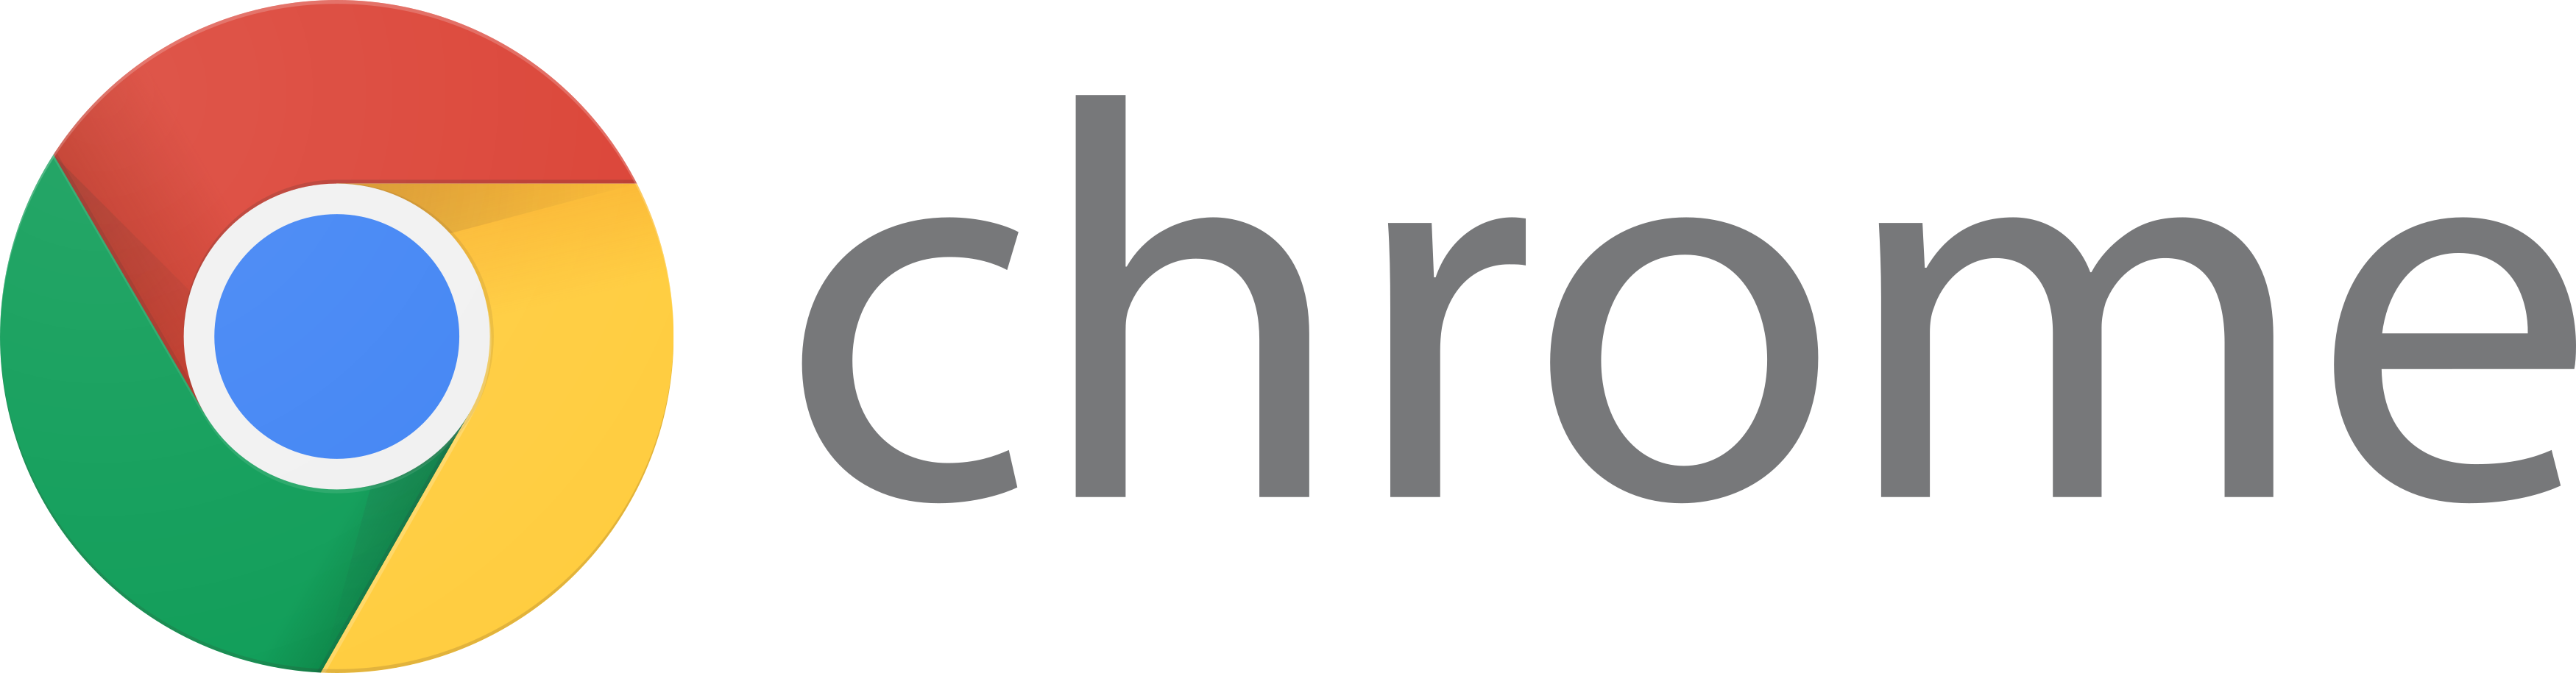 google chrome logo 1 - Google Chrome Logo